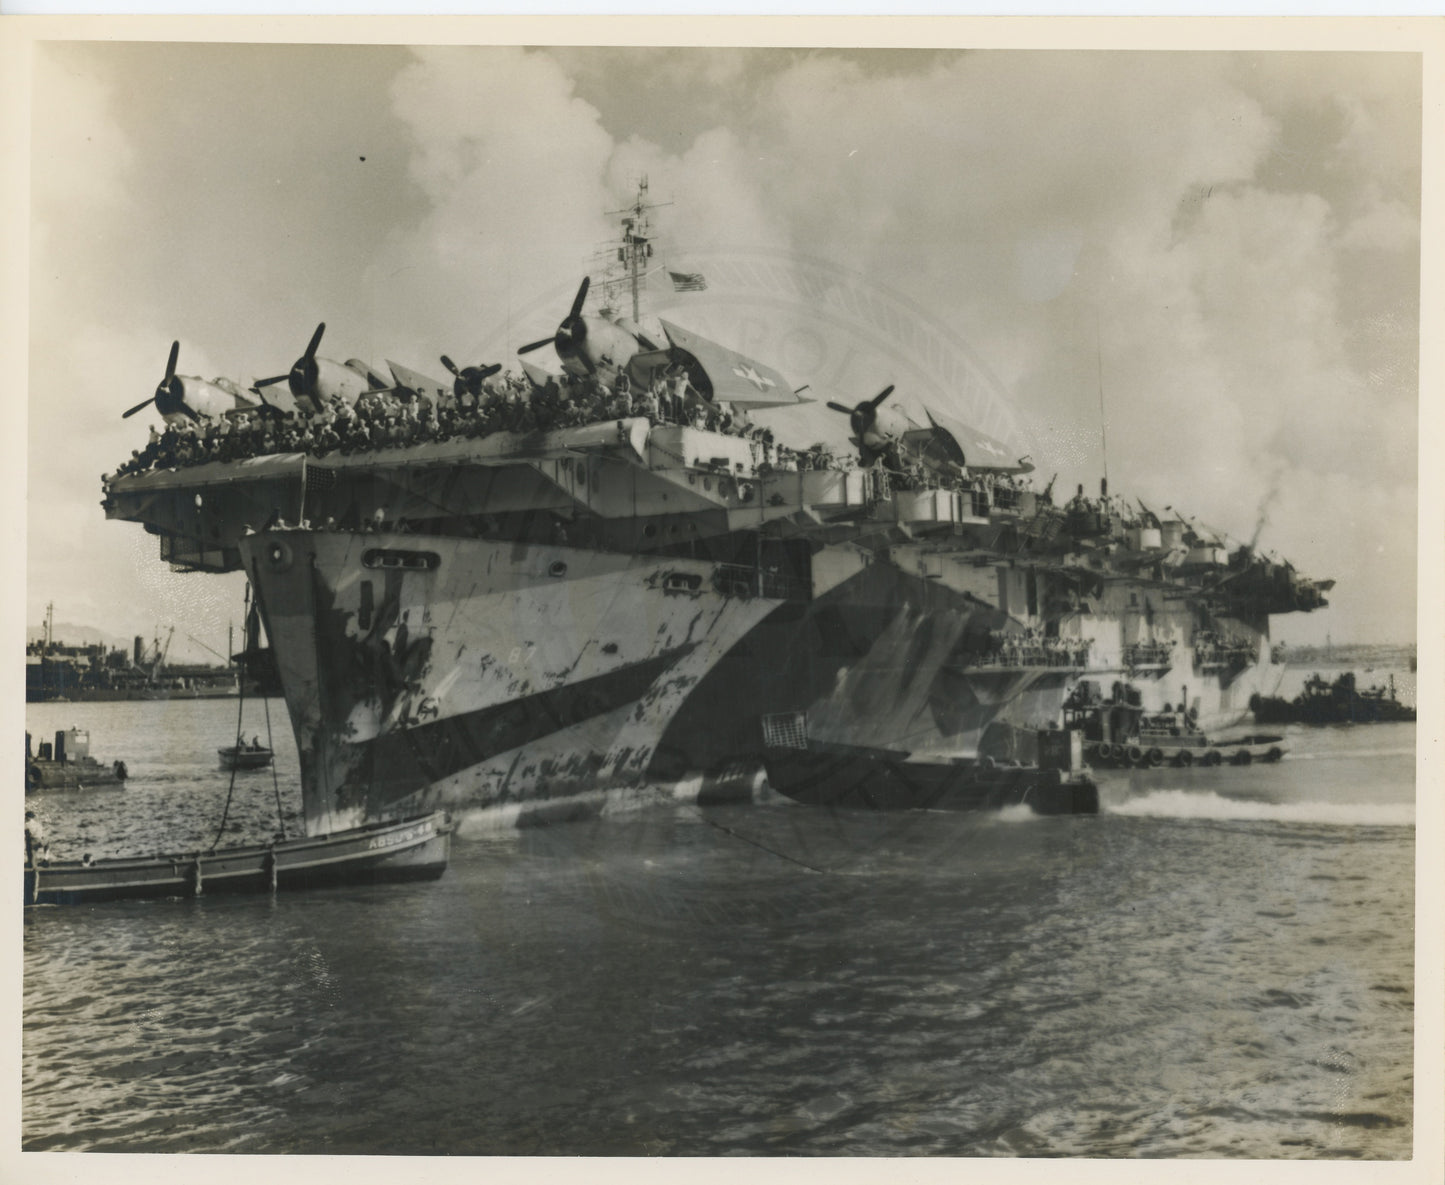 USS Steamer Bay CVE 87